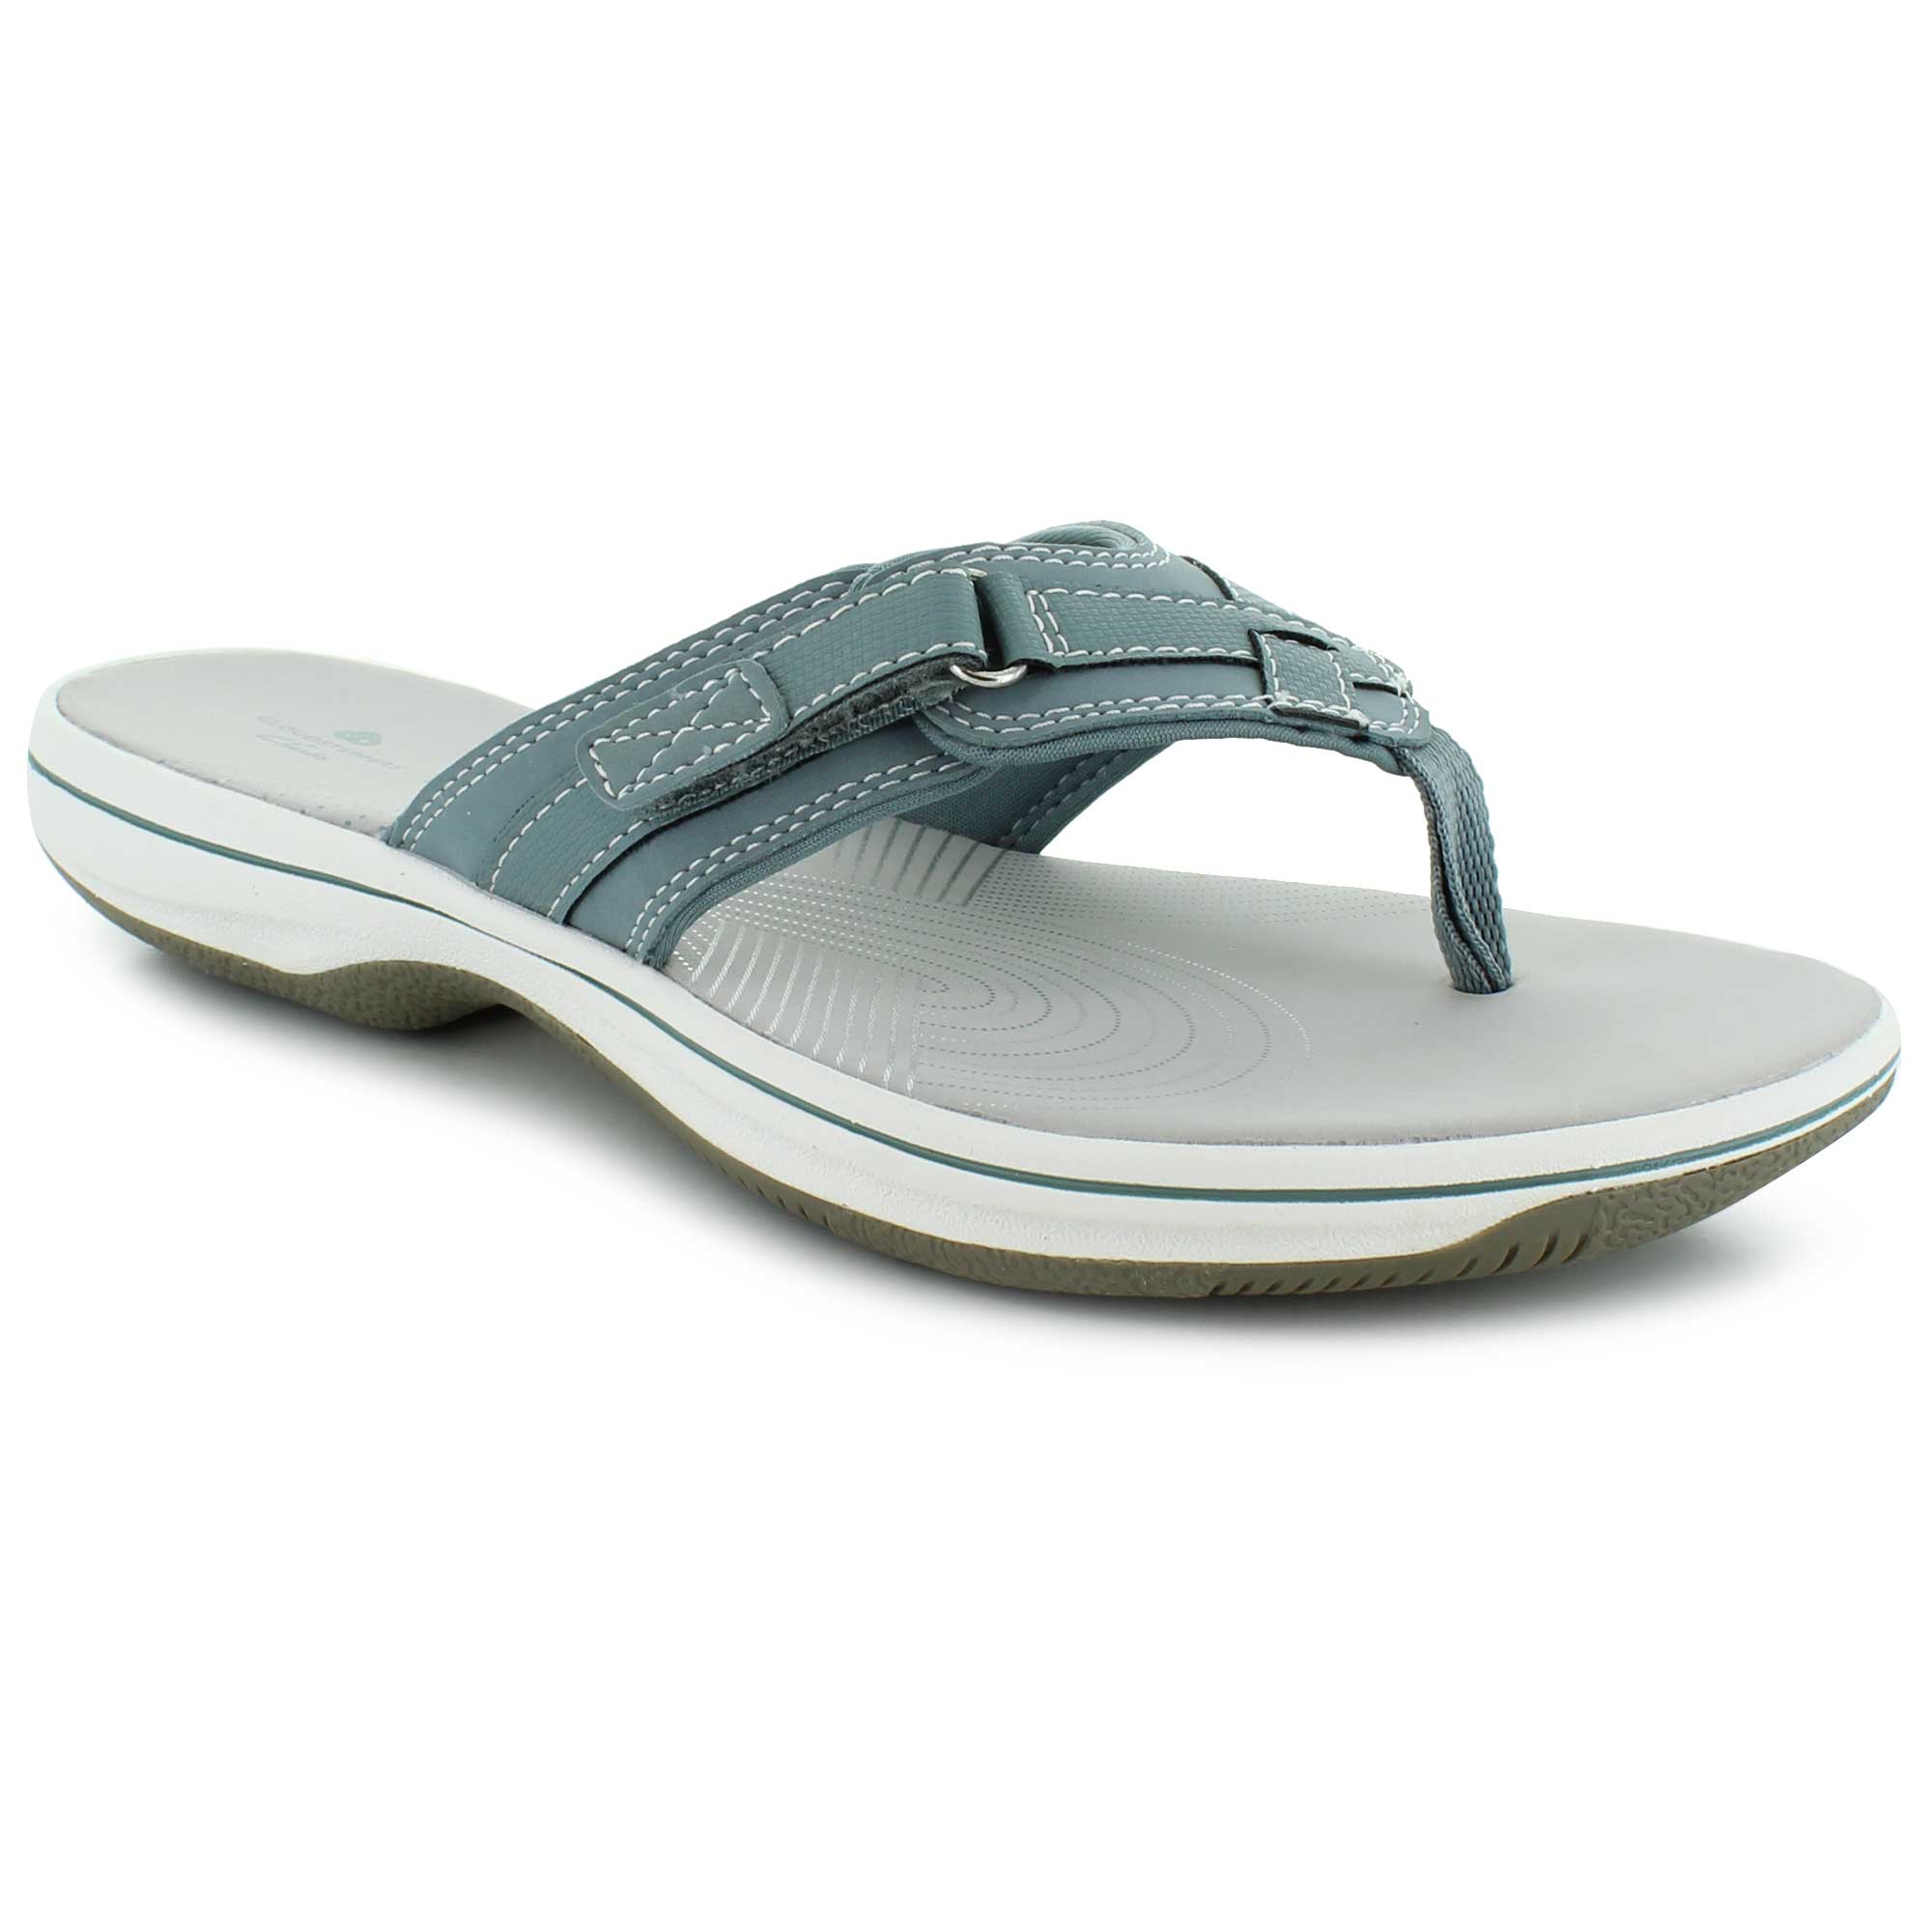 Women's Comfort Sandals | Shop Now at SHOE SHOW MEGA